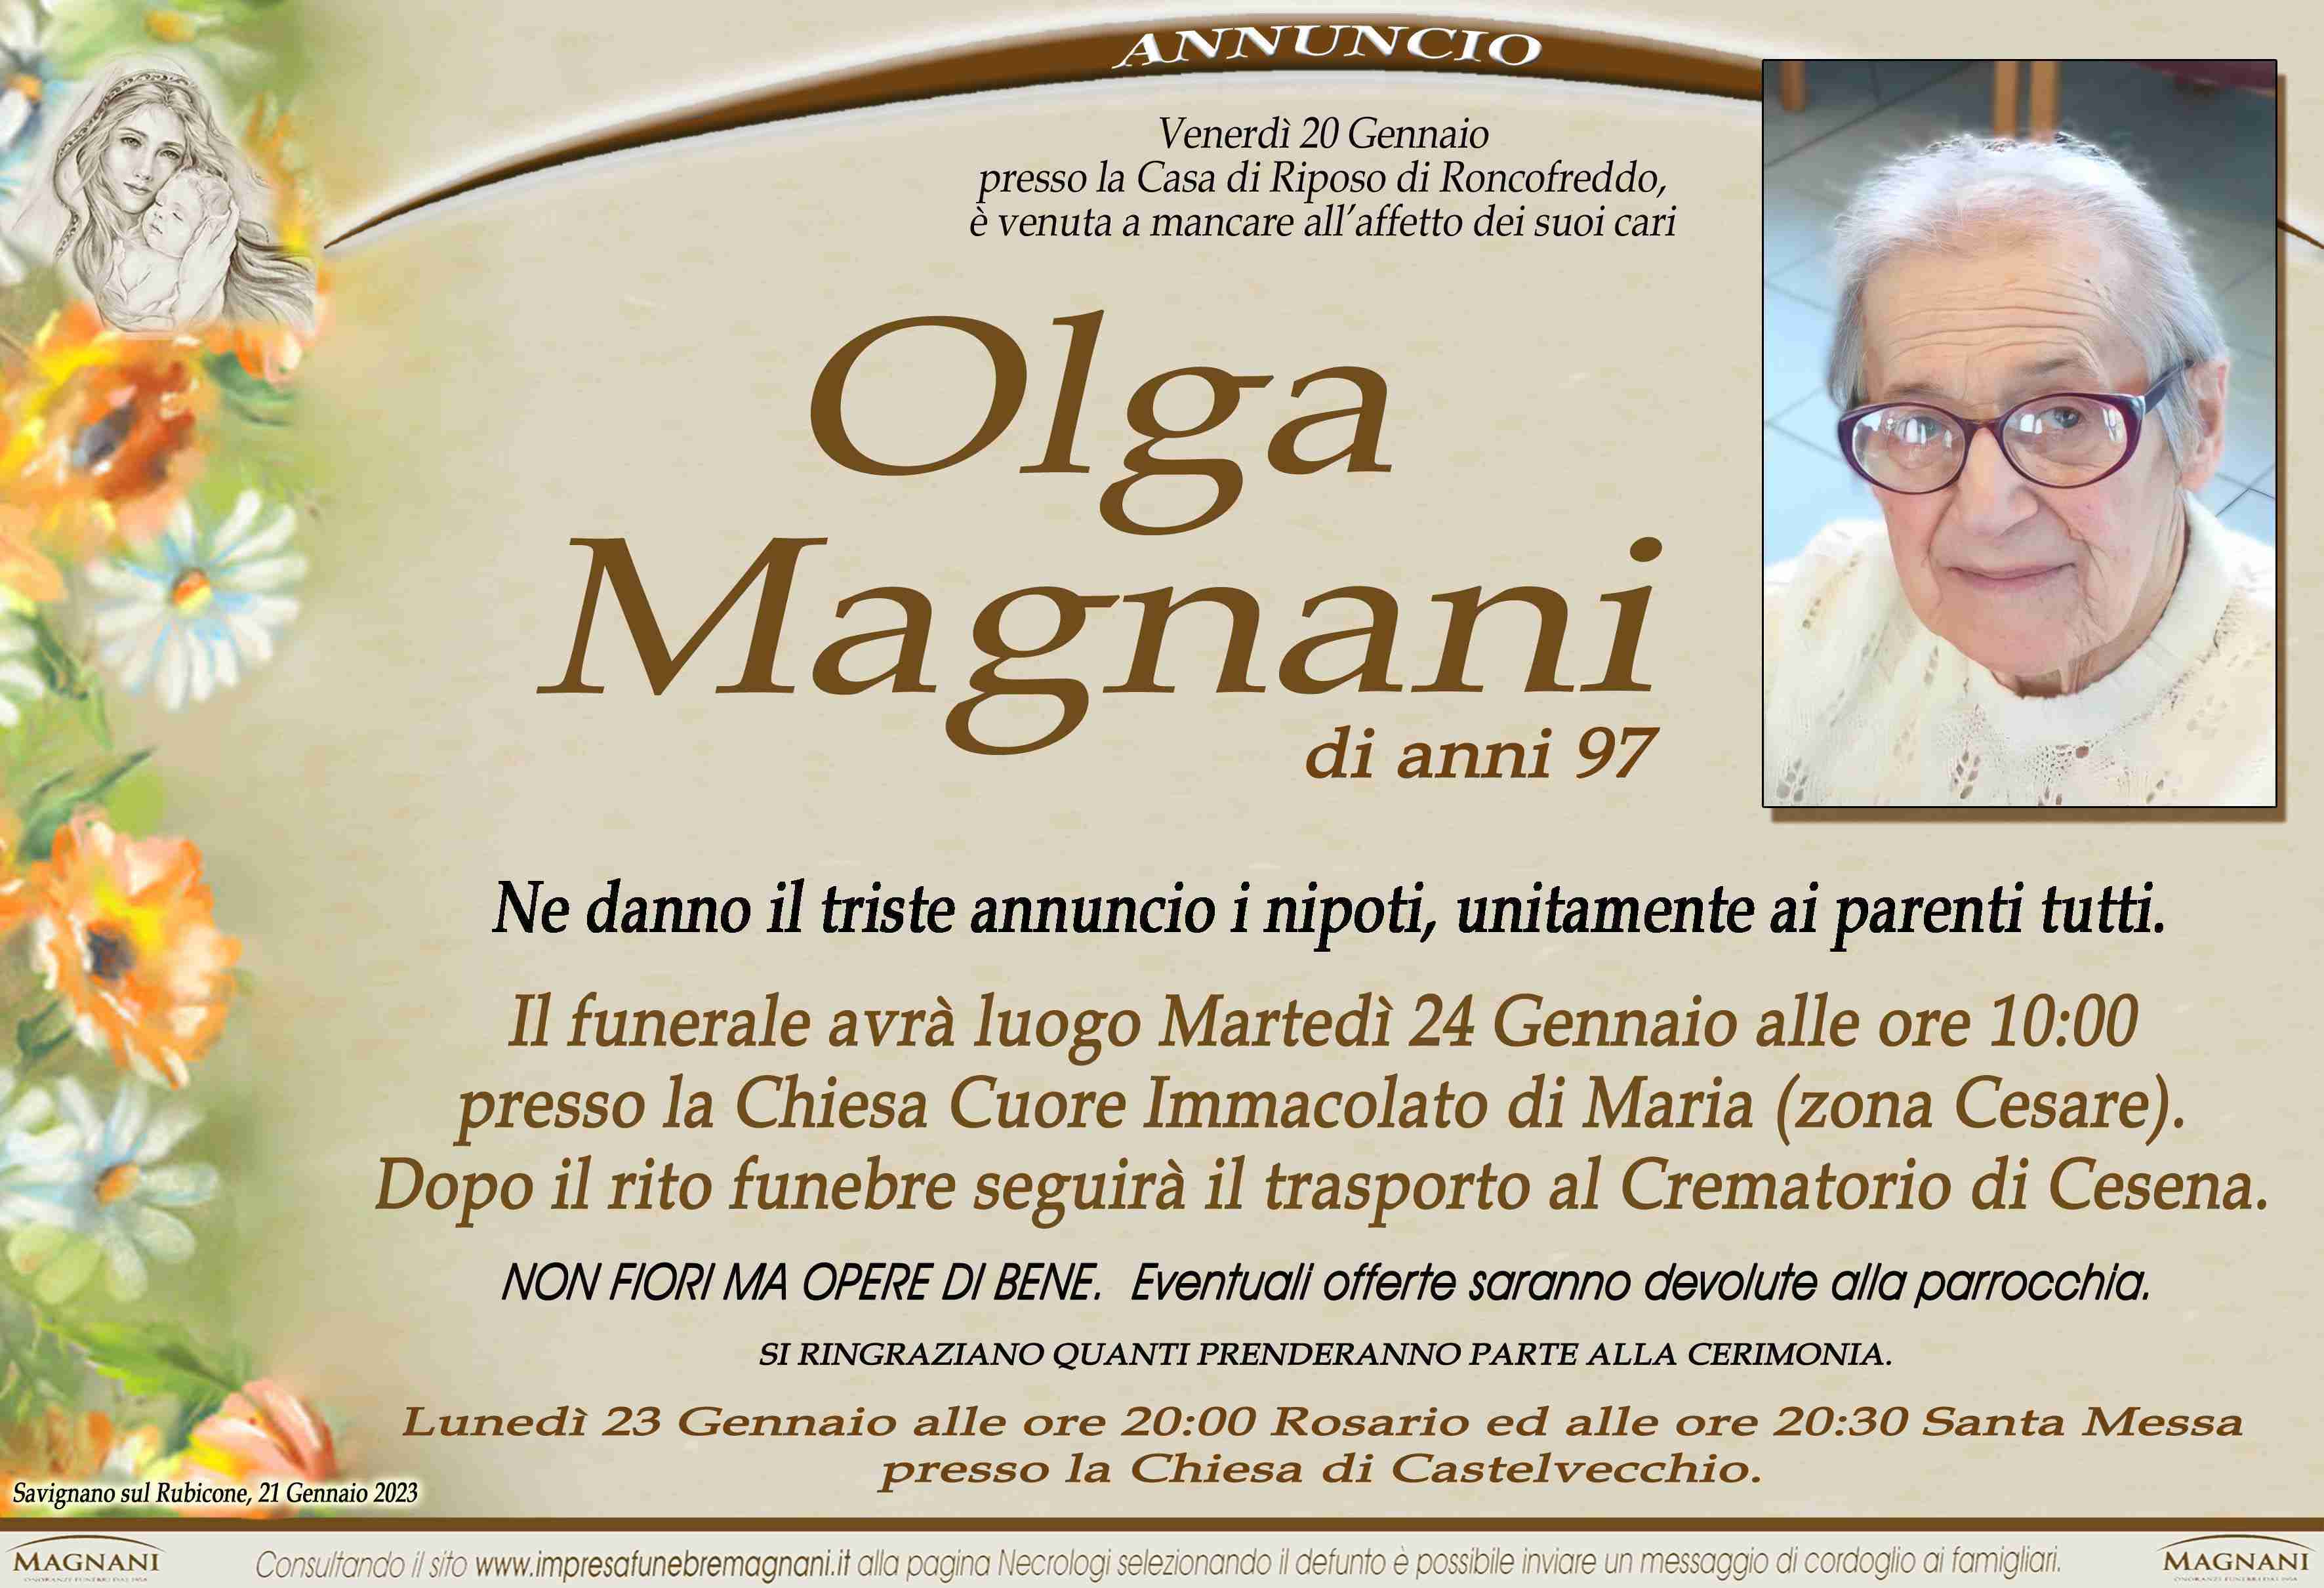 Olga Magnani